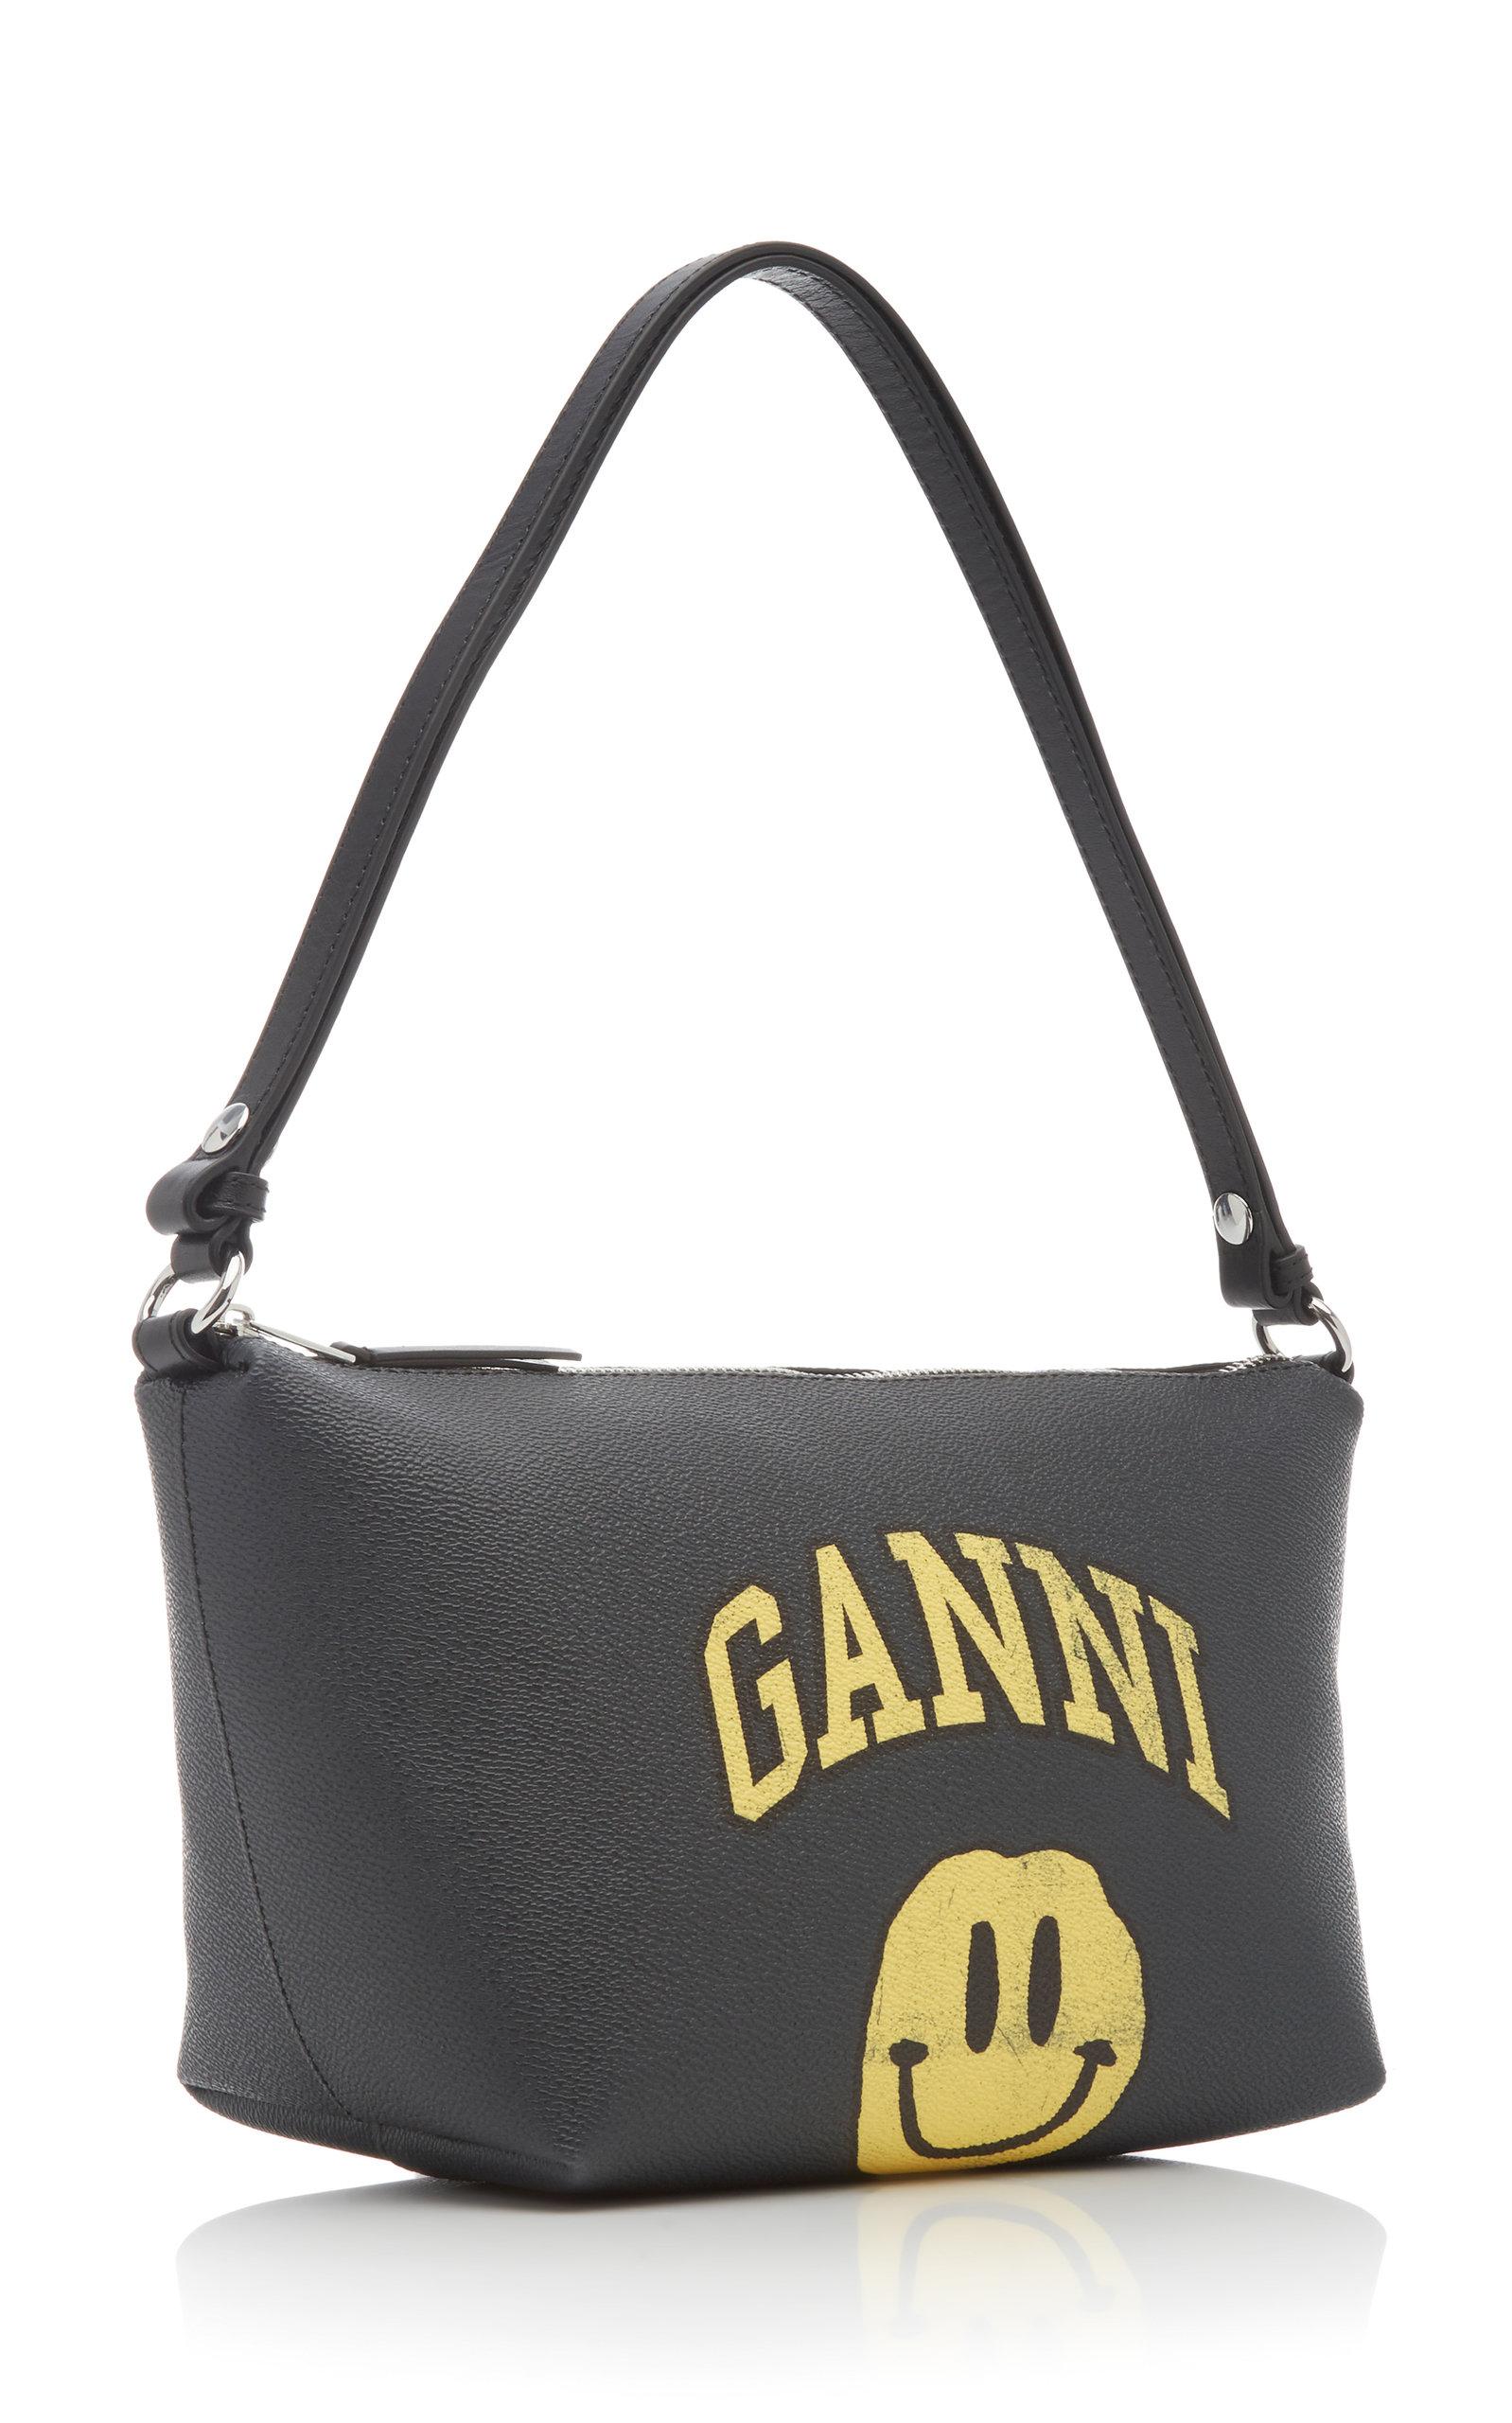 Ganni Smiley Face Coated Canvas Shoulder Bag in Black - Lyst